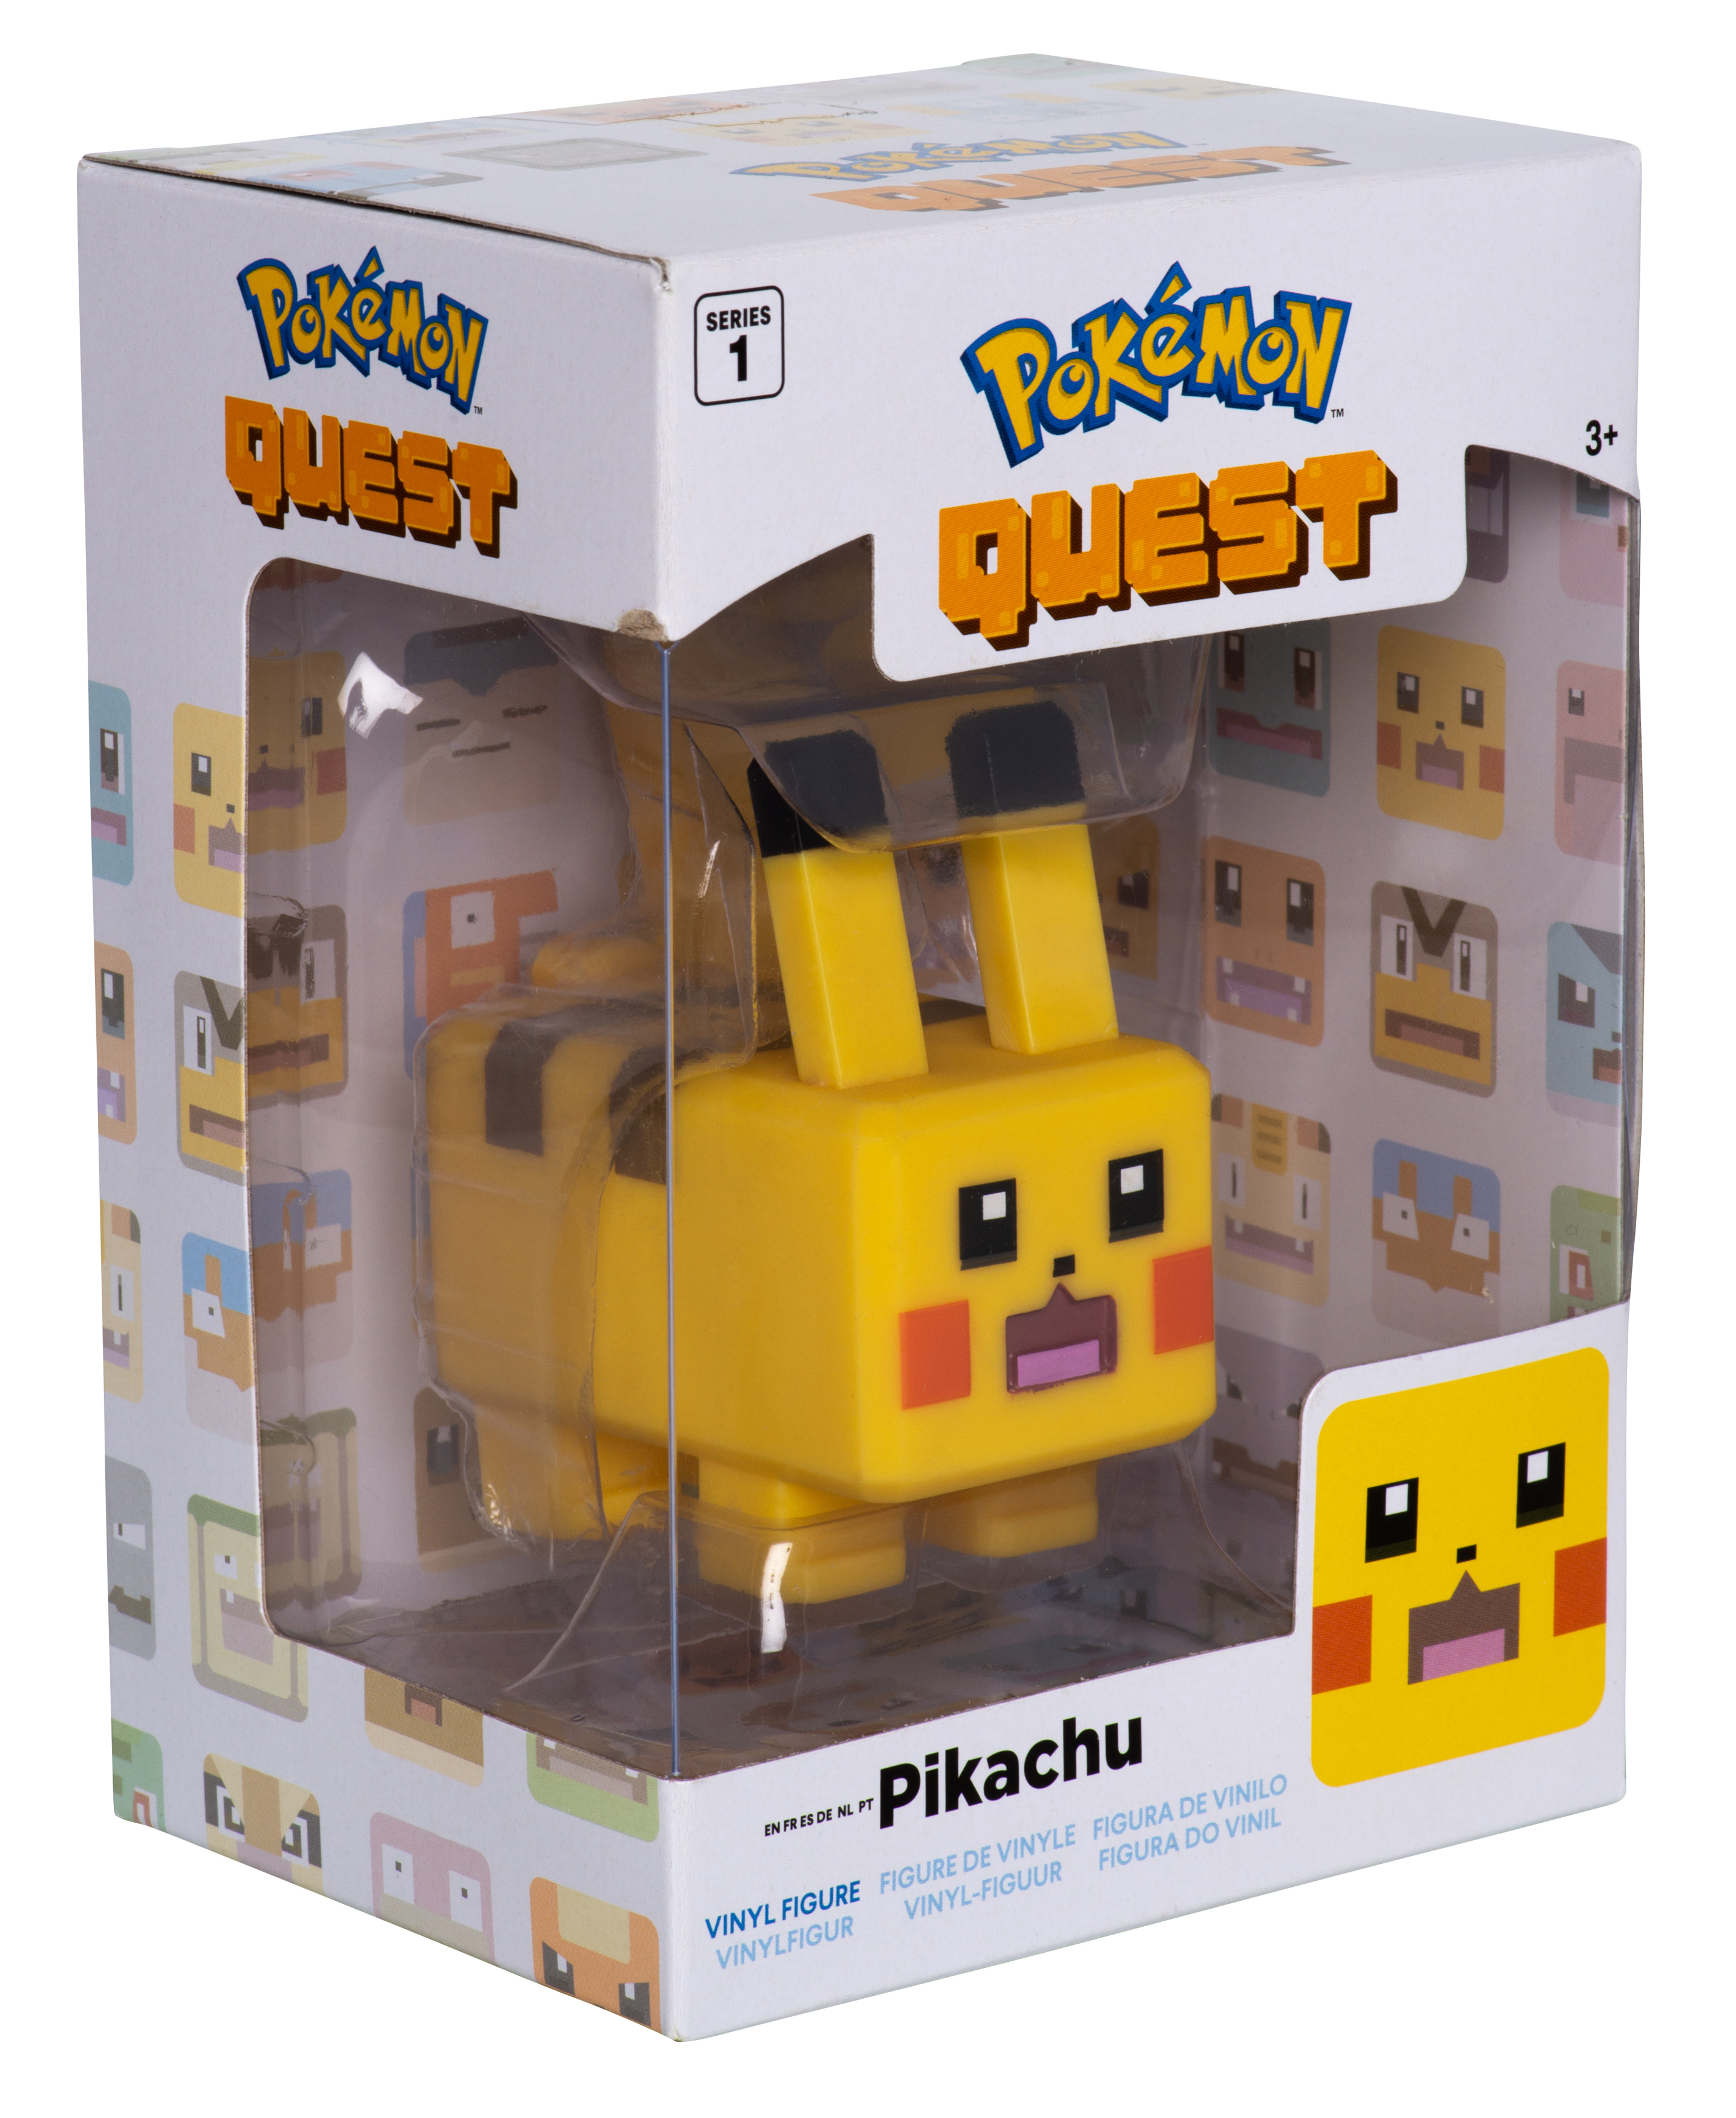 Pokémon Quest Vinyl Figur - Pikachu cm 8